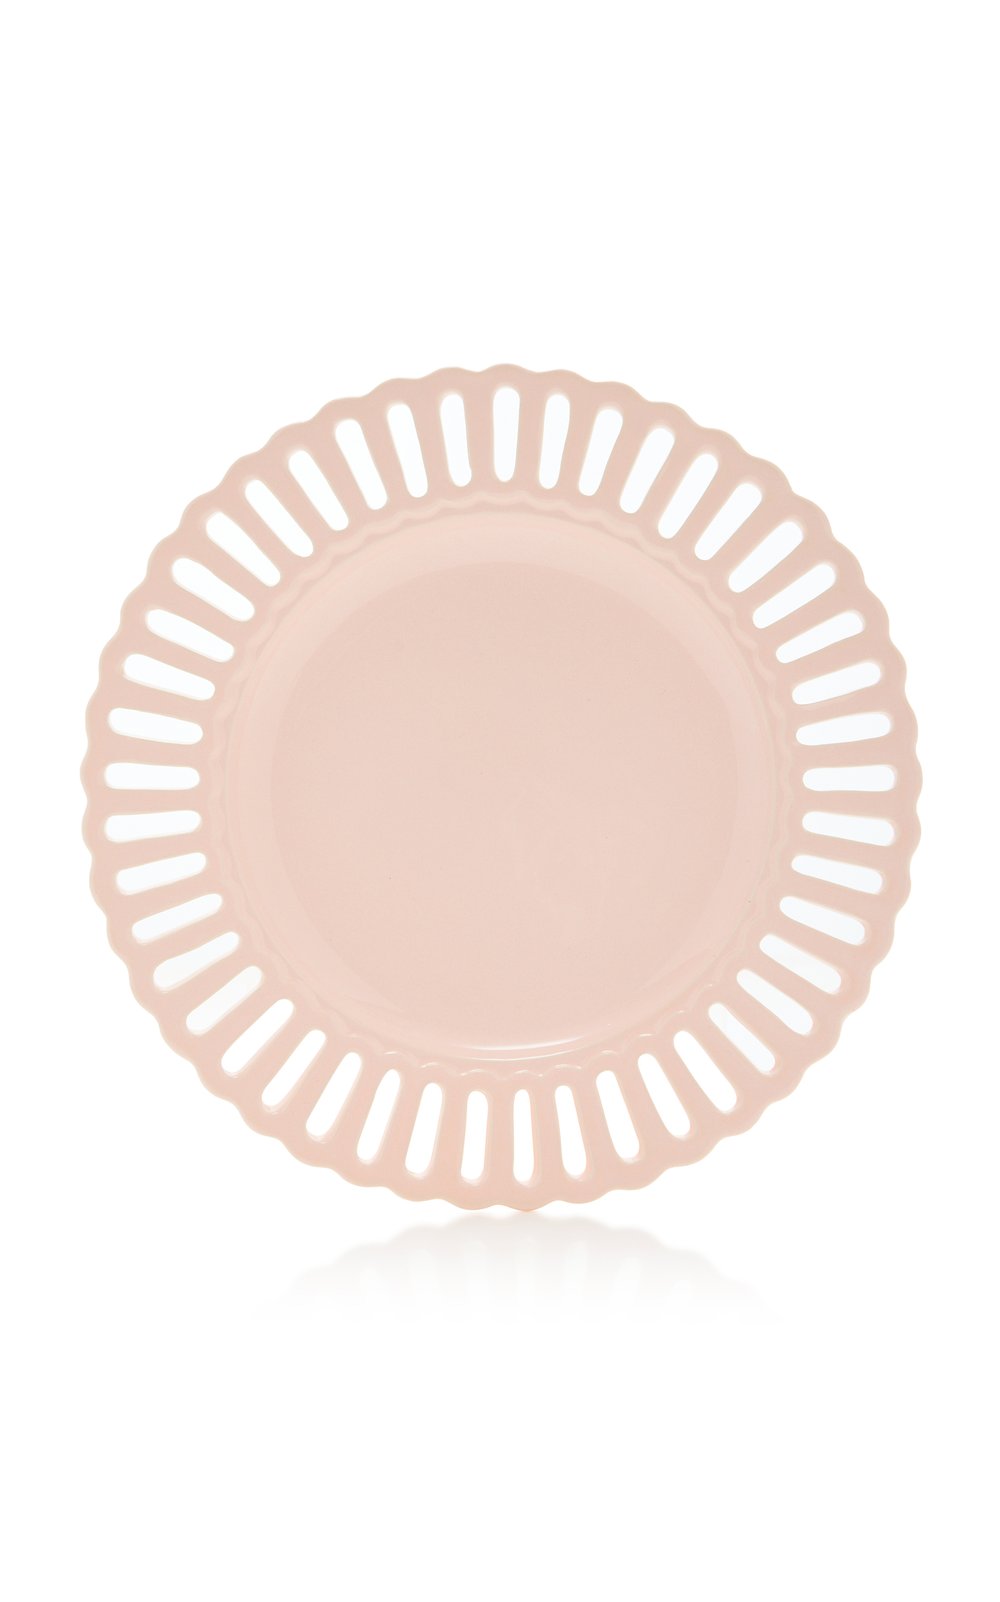 moda-domus-pink-white-creamware-balconata-new-arc-dinner-plate-cm-26d-2.jpg